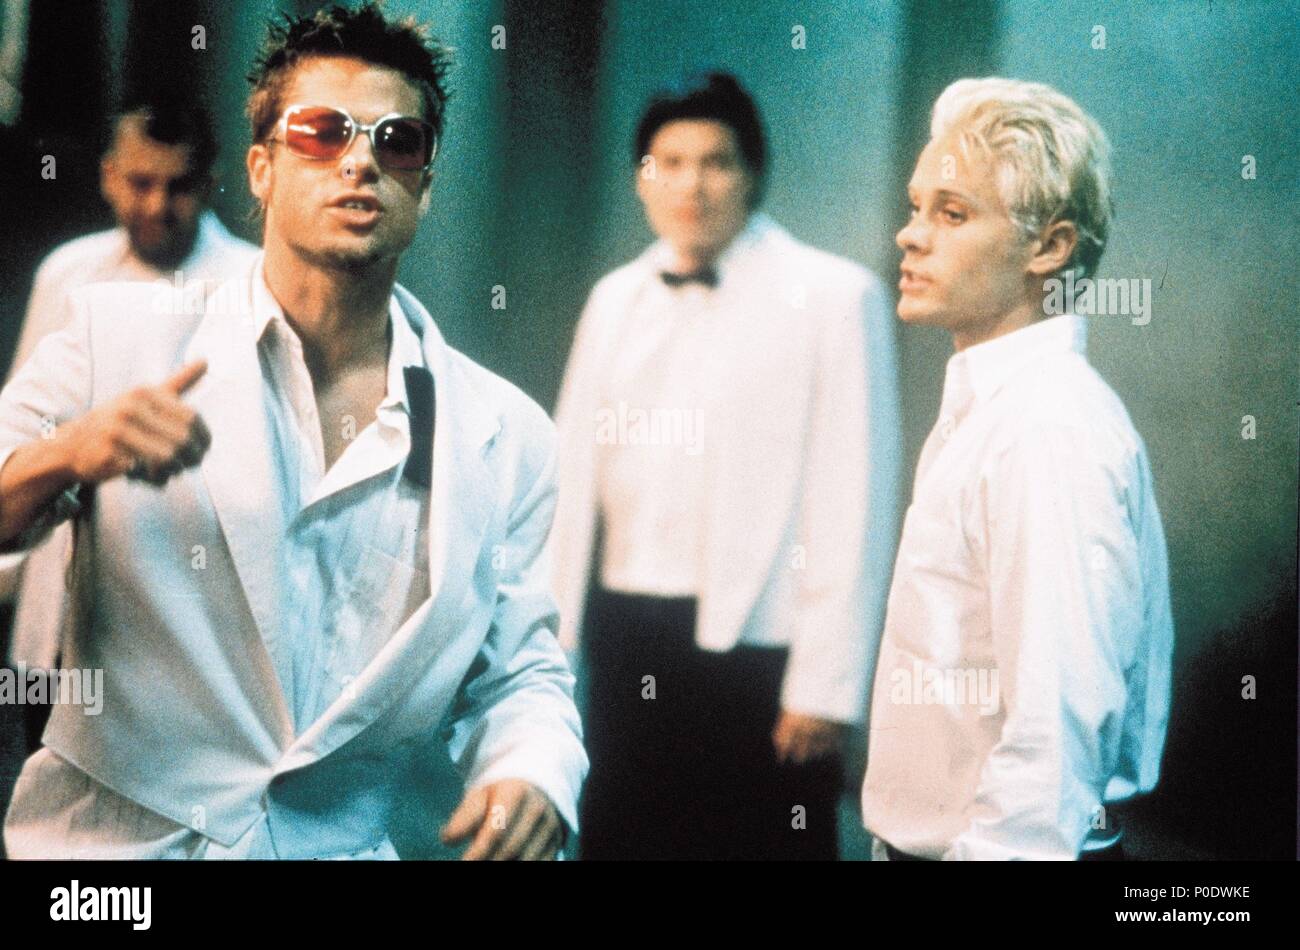 Original Film Titel Fight Club Englischer Titel Fight Club Regisseur David Fincher Jahr 1999 Stars Jared Leto Brad Pitt Quelle 20th Century Fox Album Stockfotografie Alamy